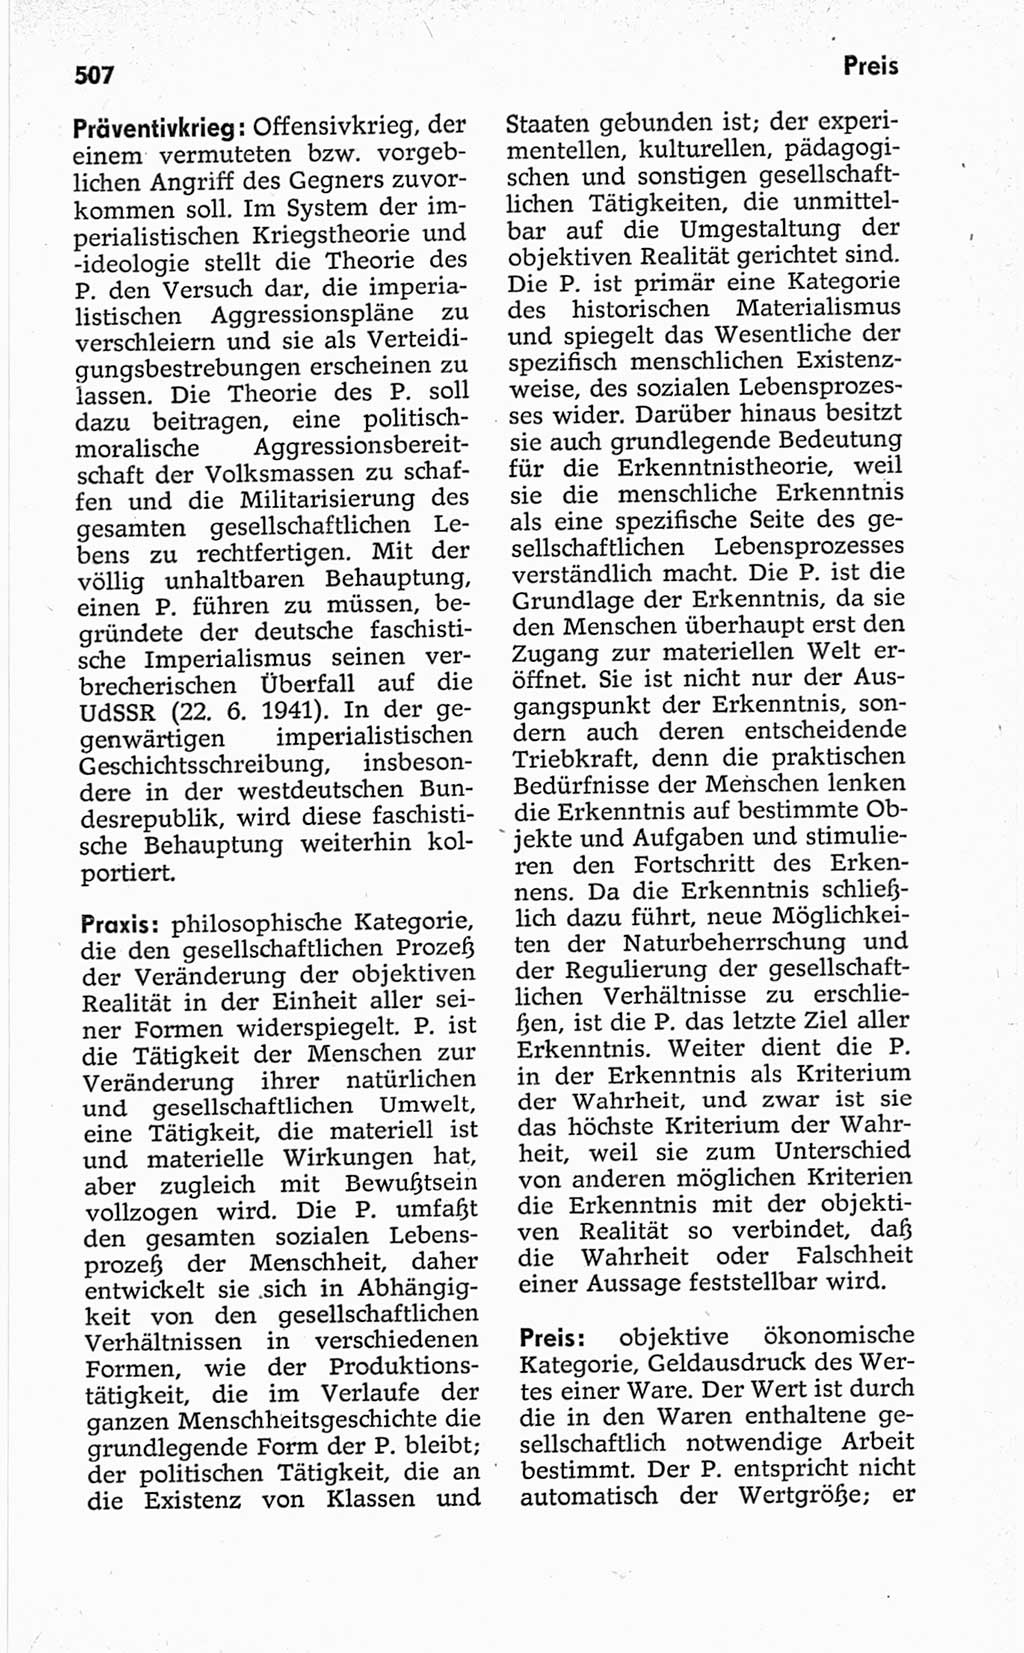 Kleines politisches Wörterbuch [Deutsche Demokratische Republik (DDR)] 1967, Seite 507 (Kl. pol. Wb. DDR 1967, S. 507)